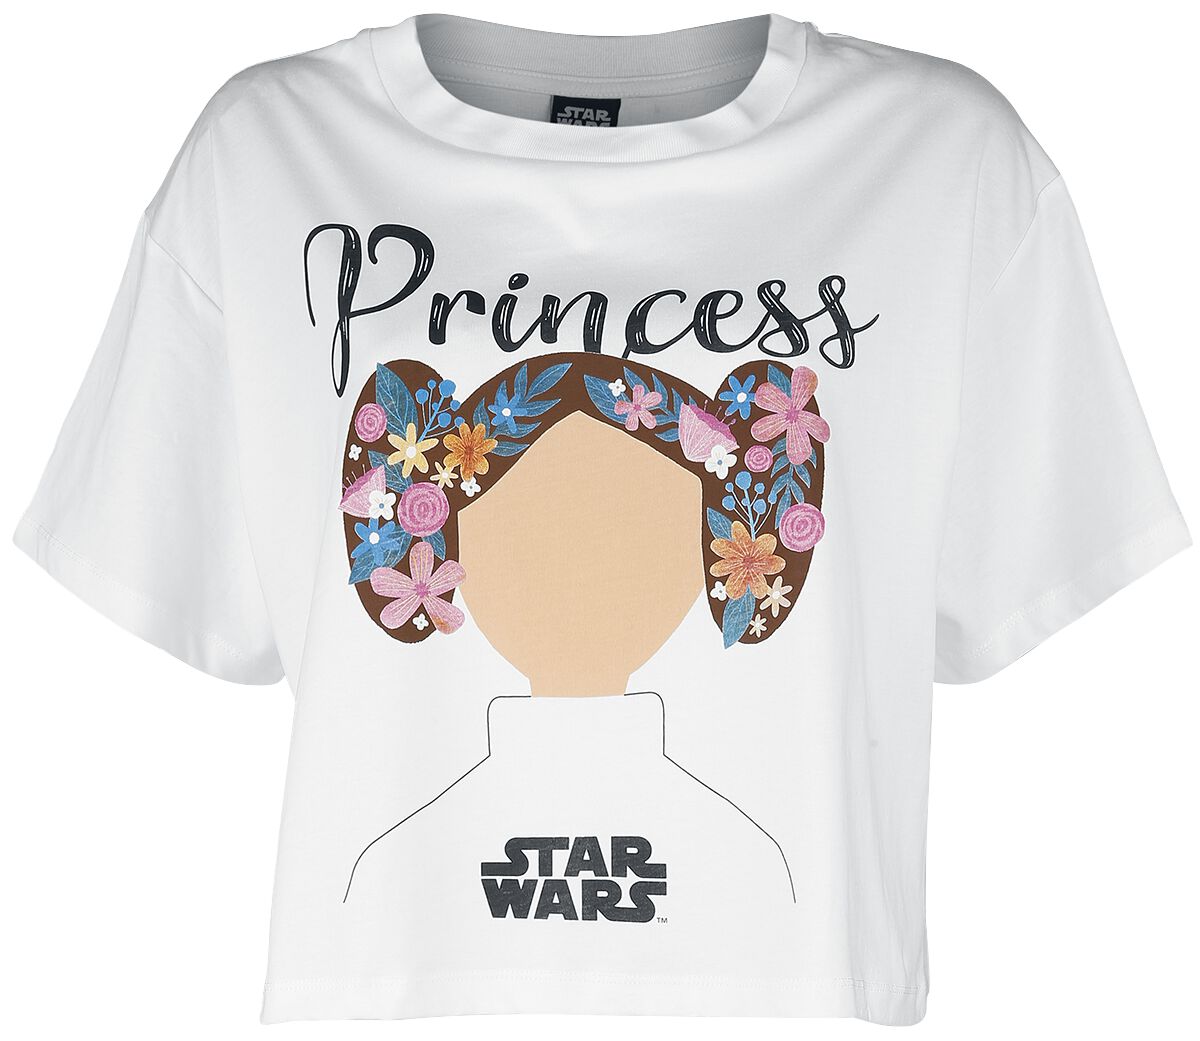 Star Wars T-Shirt - Star Wars - Princess Lea - S bis XXL - für Damen - Größe XXL - weiß  - EMP exklusives Merchandise!